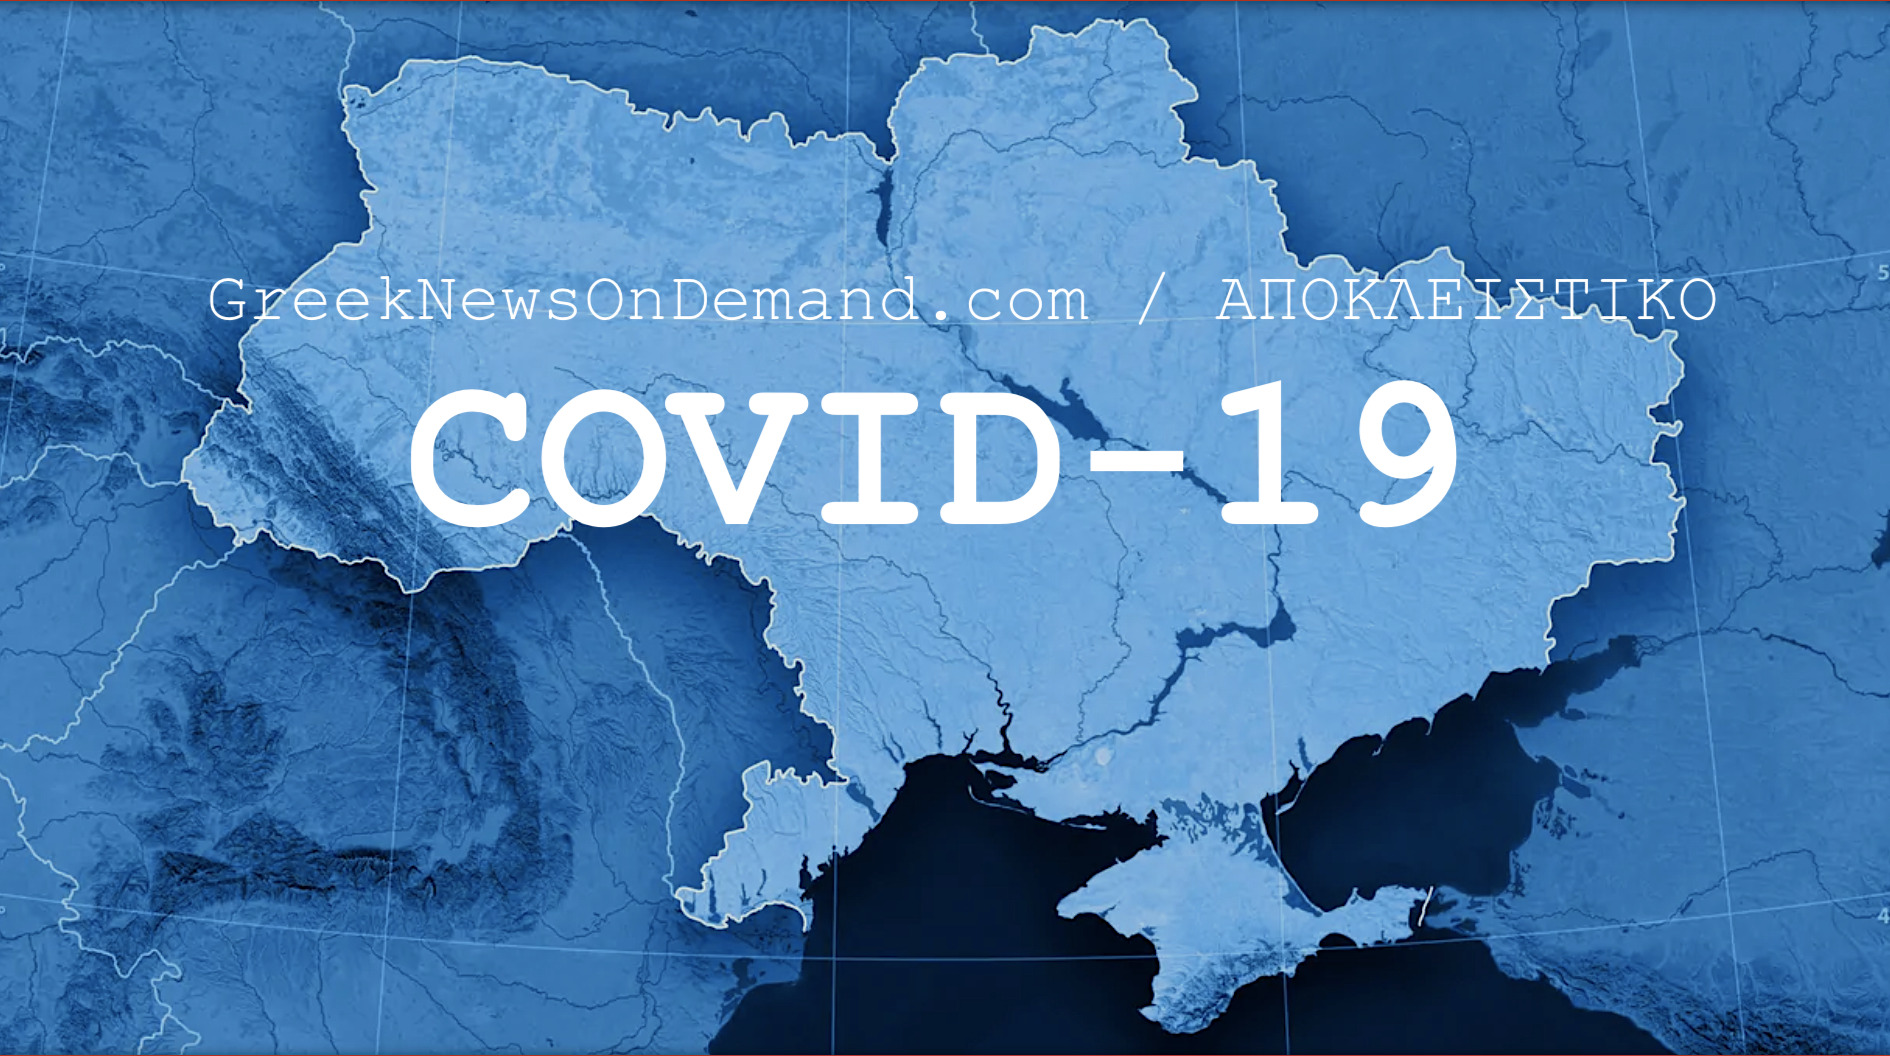 ΒΟΜΒΑ ΜΕΓΑΤΟΝΩΝ: Τρεις μήνες πριν από την αποκάλυψη του Covid σε όλο τον κόσμο, το Υπουργείο Άμυνας των ΗΠΑ ανέθεσε στην Ουκρανία ειδική σύμβαση για «Έρευνα για τον Covid-19»!!!